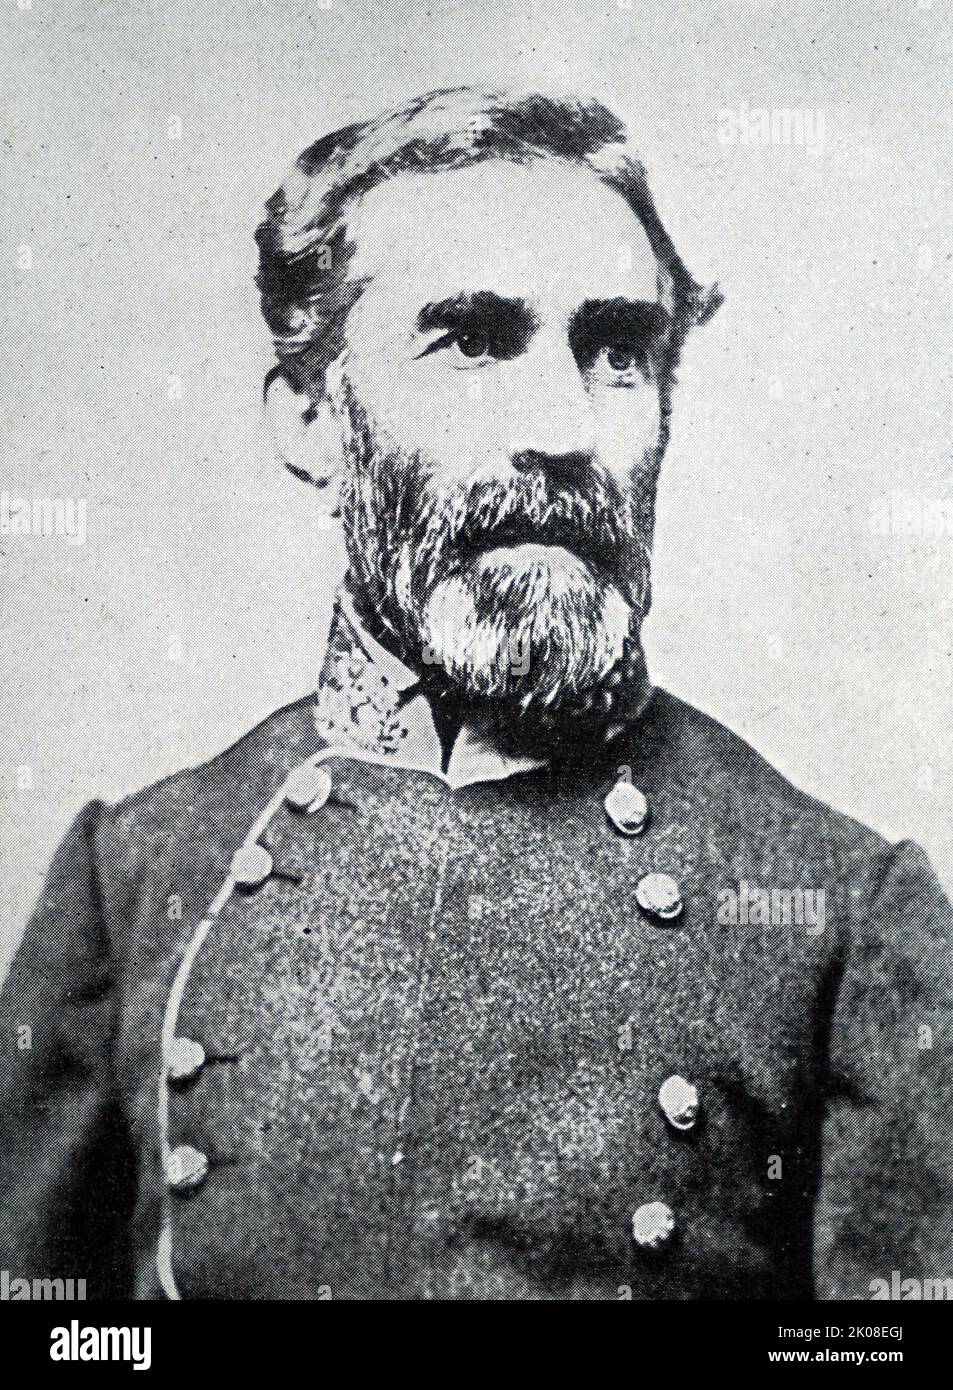 Le colonel Braxton Bragg (22 mars 1817 - 27 septembre 1876) était un officier de l'armée américaine pendant la Seconde Guerre de Seminole et un officier de l'armée confédérée et de la guerre américano-mexicaine qui a servi comme général dans l'armée confédérée pendant la guerre civile américaine Banque D'Images